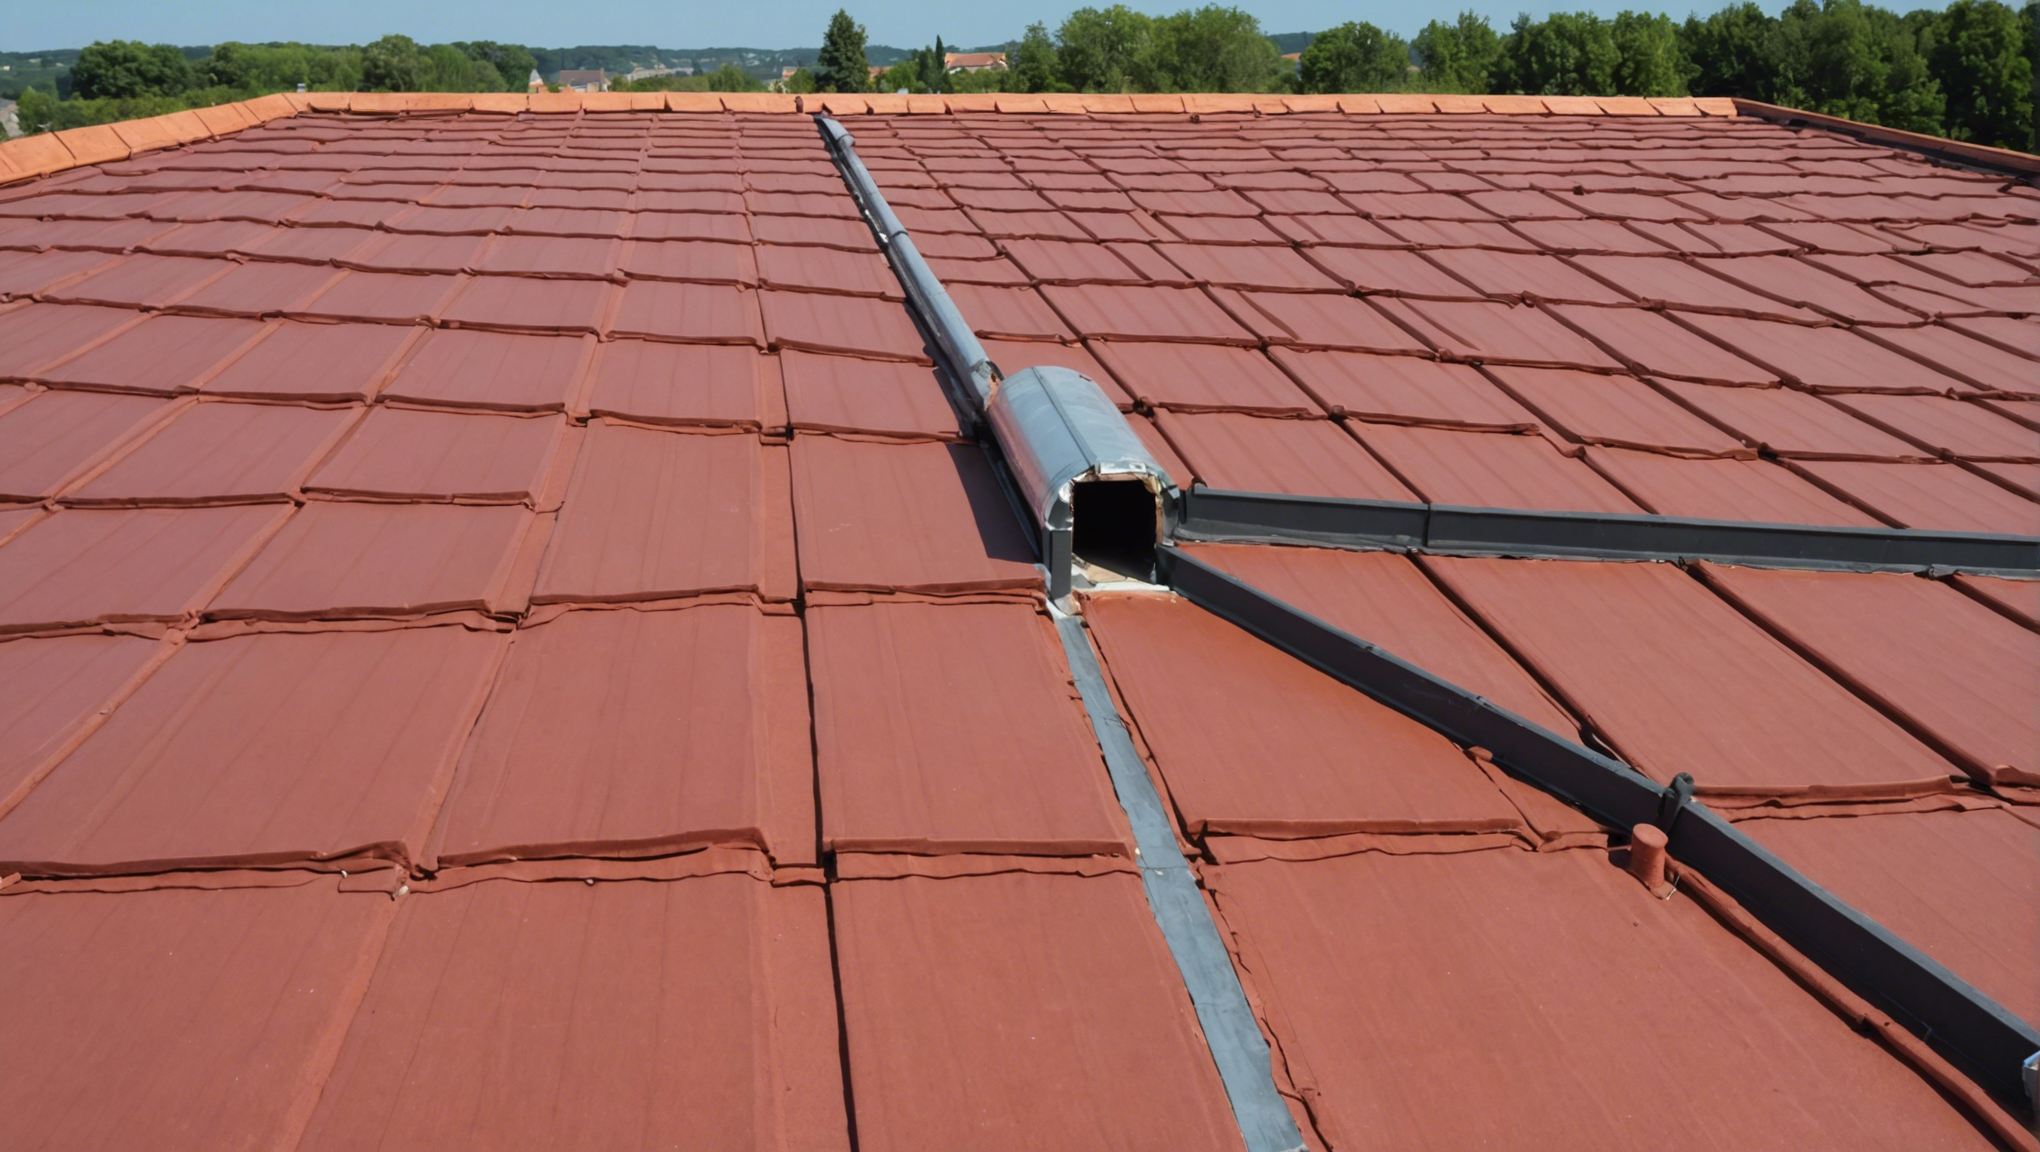 découvrez comment l'isolation de toiture avec isothane en france peut vous bénéficier. profitez d'une isolation efficace pour des économies d'énergie et un confort optimal dans votre habitation.